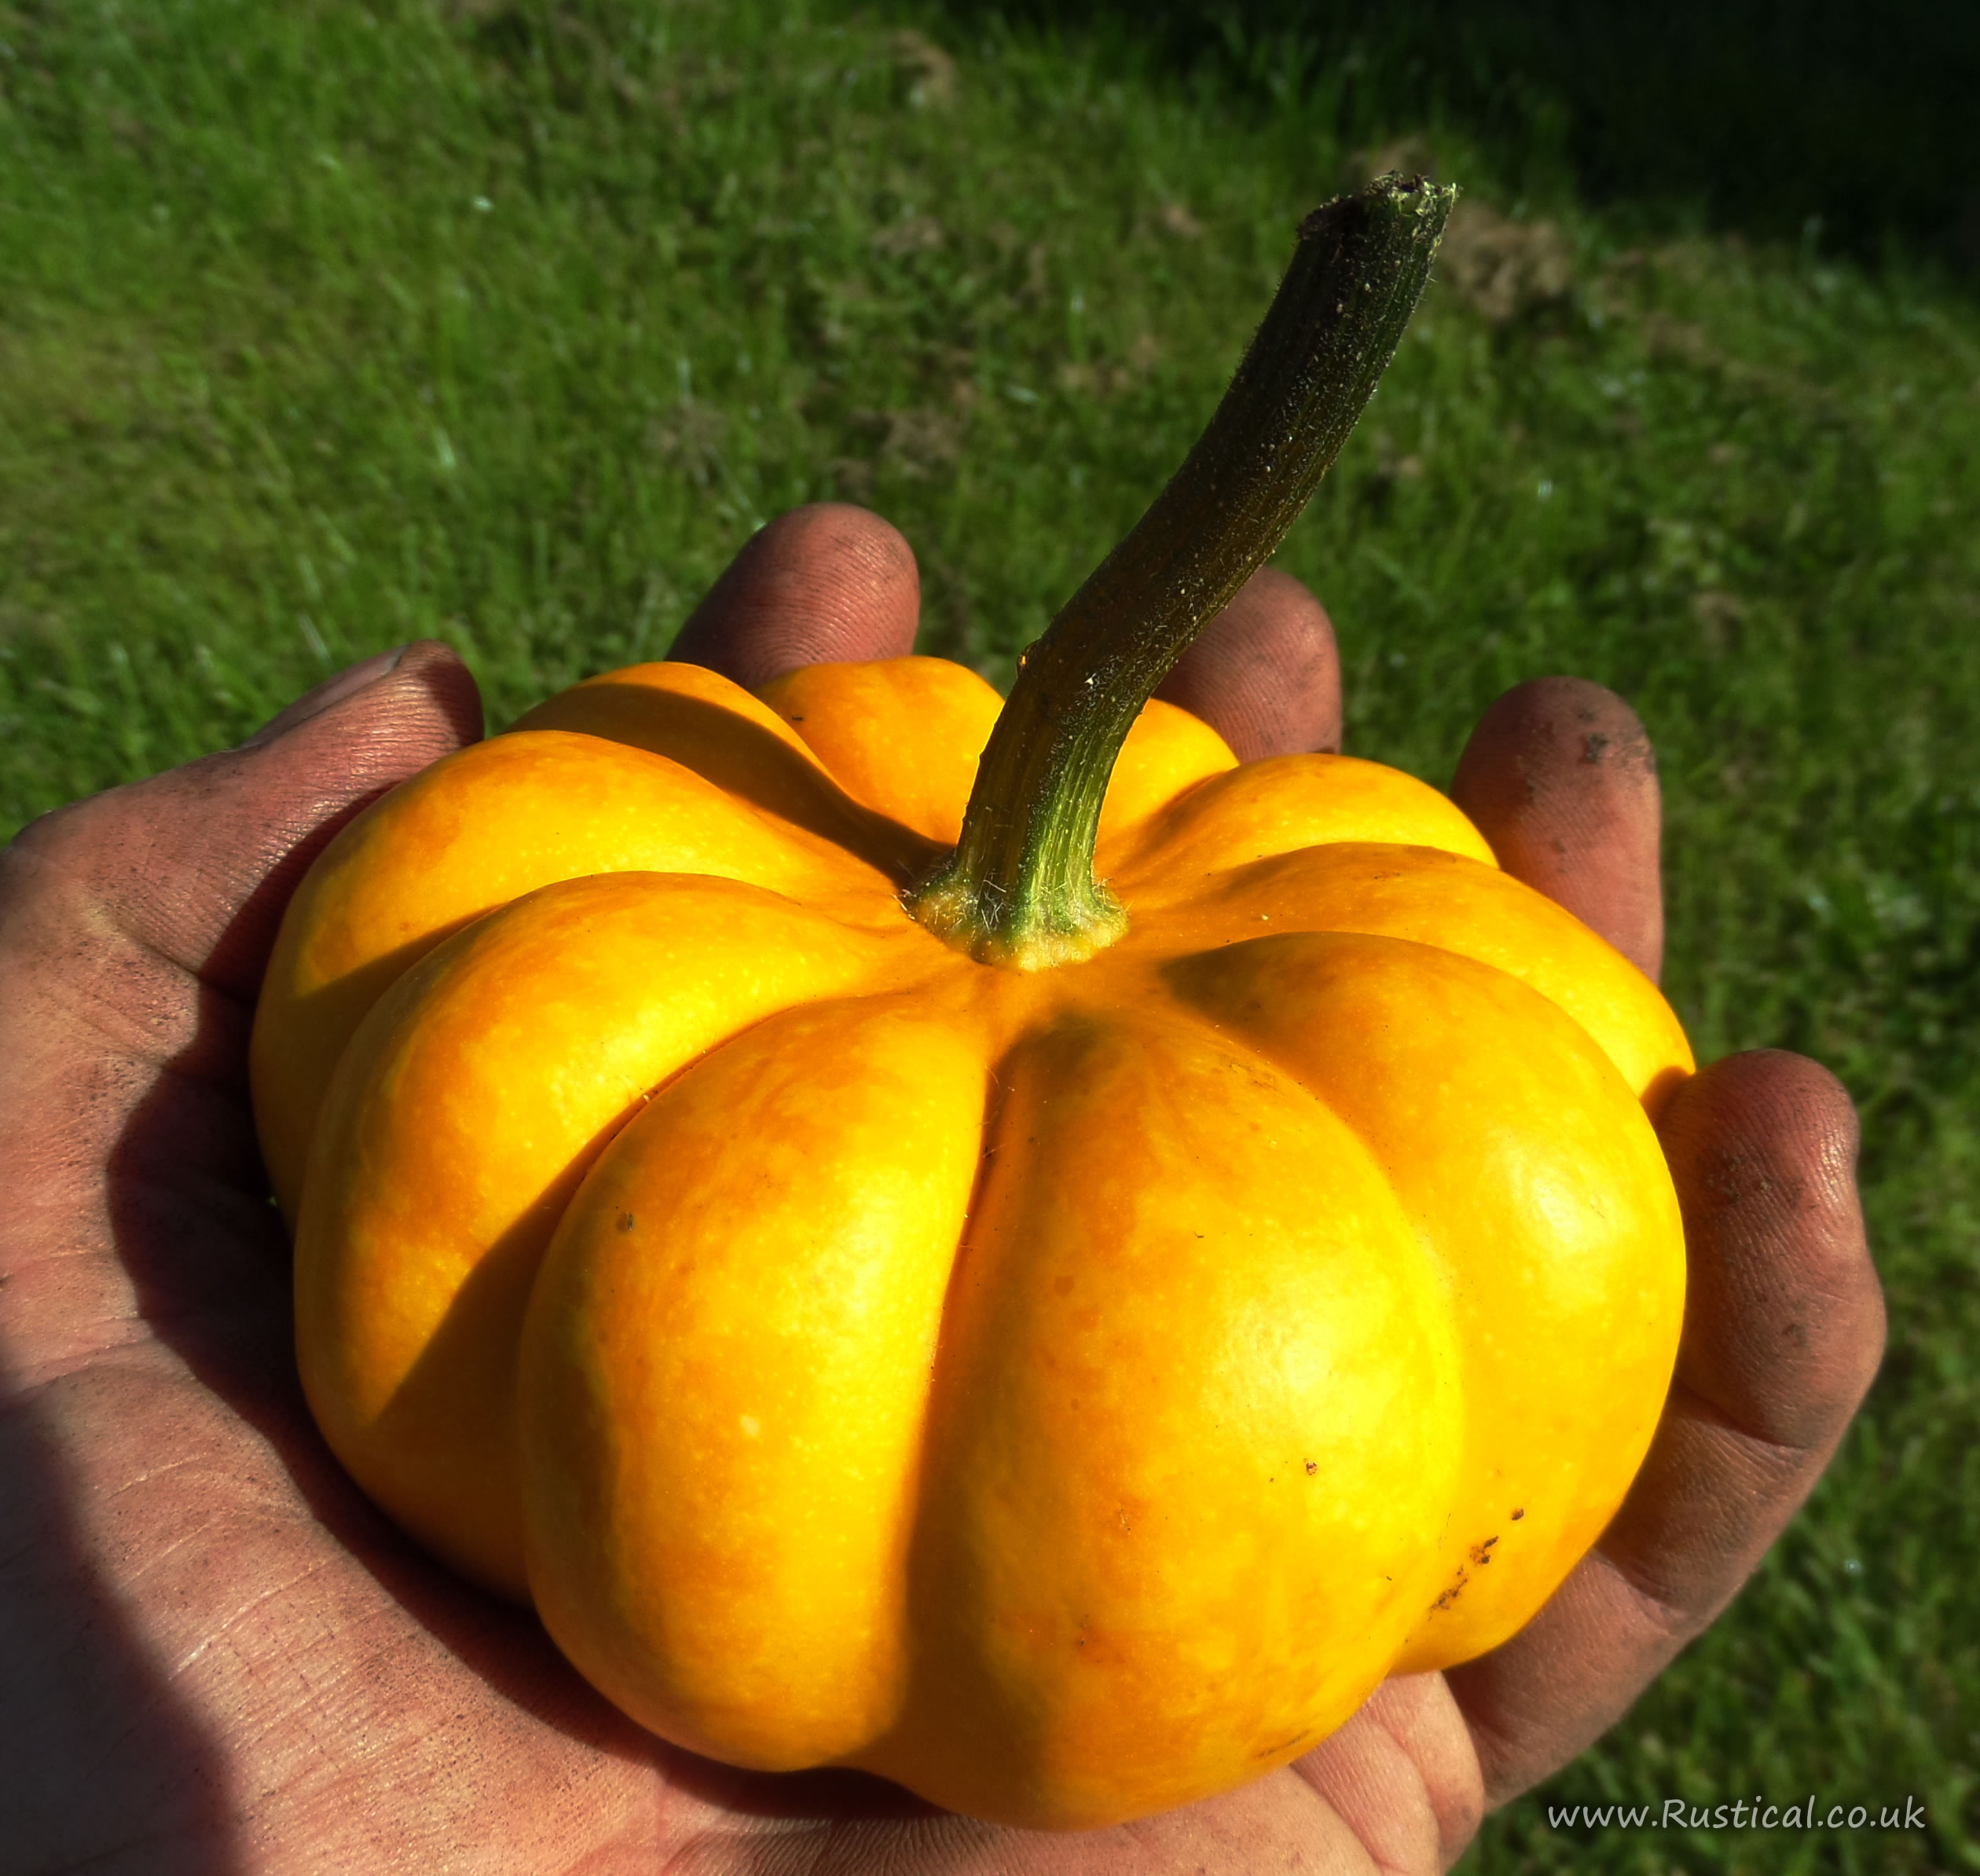 A small pumpkin ideal for autumnal arrangements